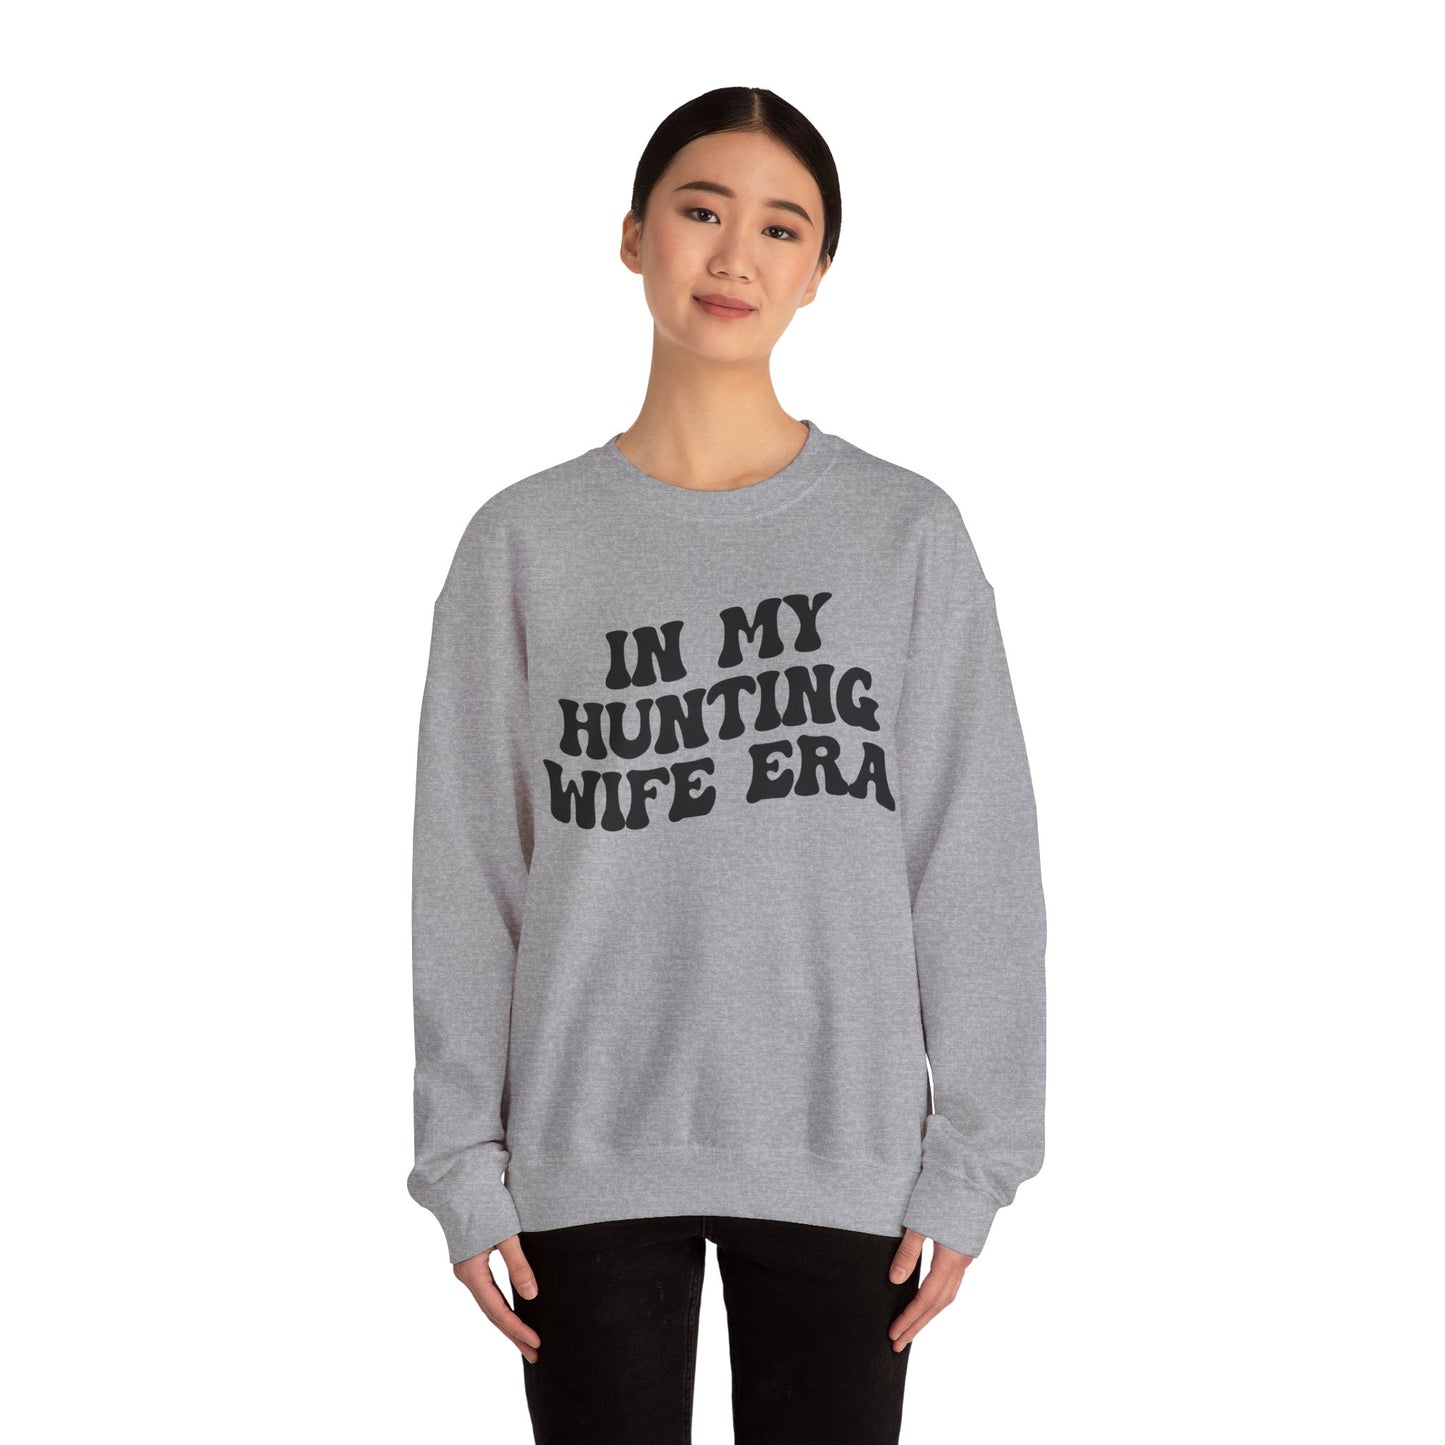 In My Hunting Wife Era Sweatshirt, Hunter Wife Sweatshirt, Gift for Wife from Husband, Hunting Wife Sweatshirt, Hunting Season Shirt, S1318